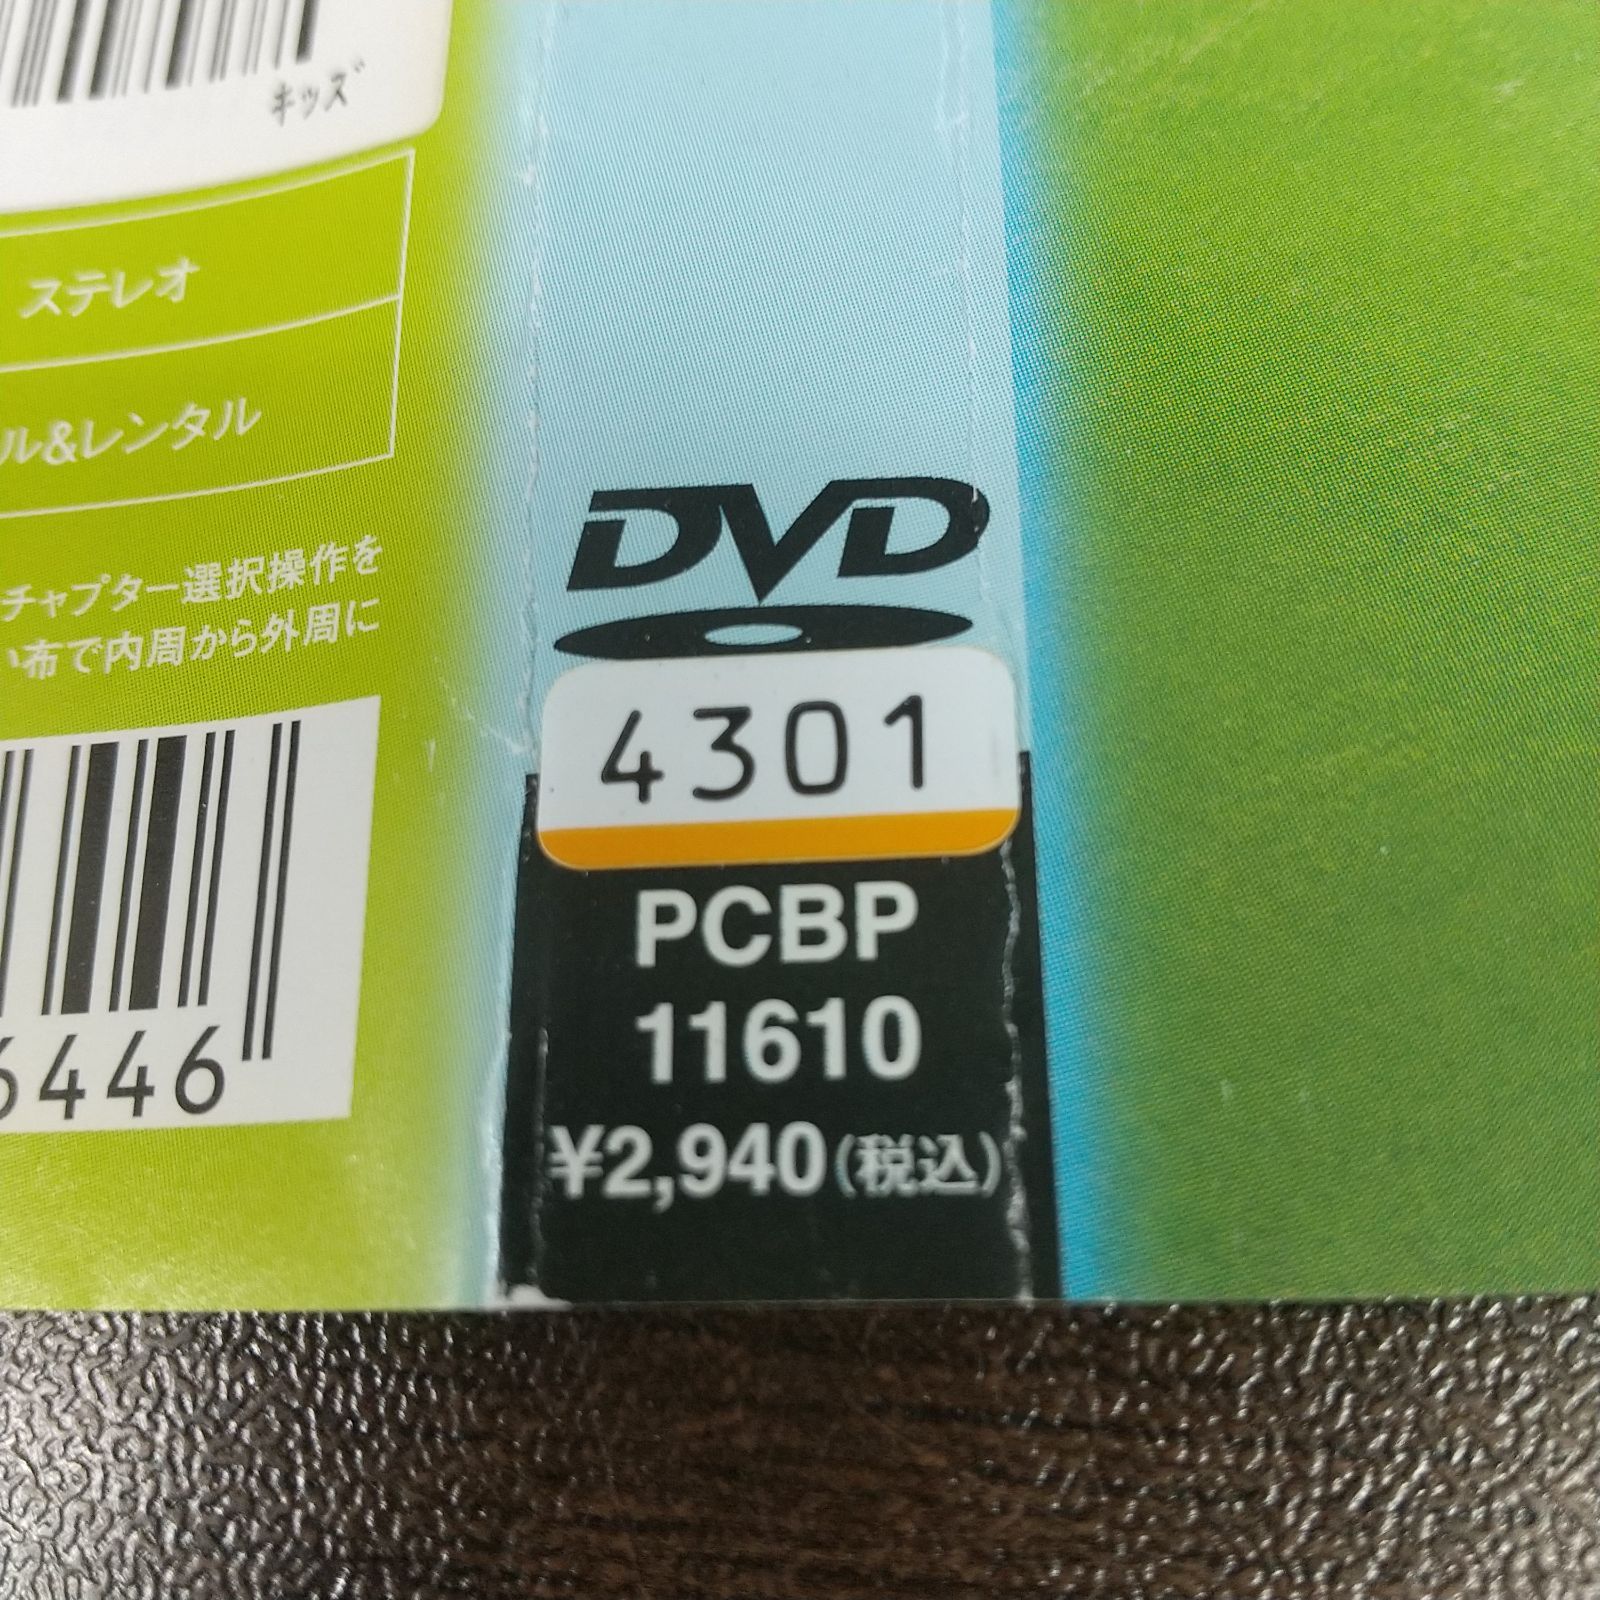 おでんくん vol.20 レンタル落ち 中古 DVD ケース付き - メルカリ